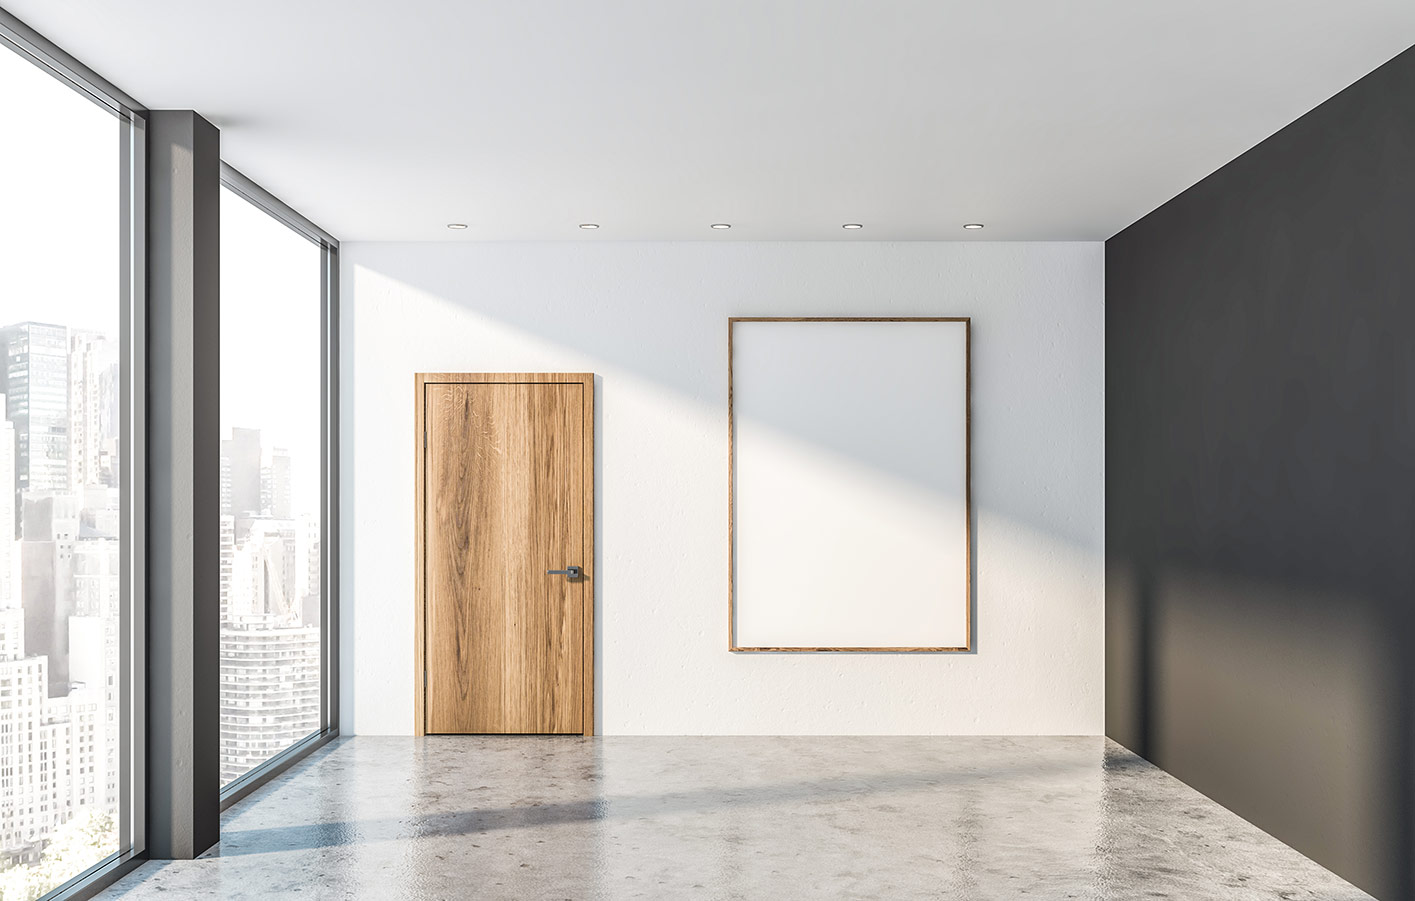 Holztür in einen leeren Raum mit einer großen Glasfront